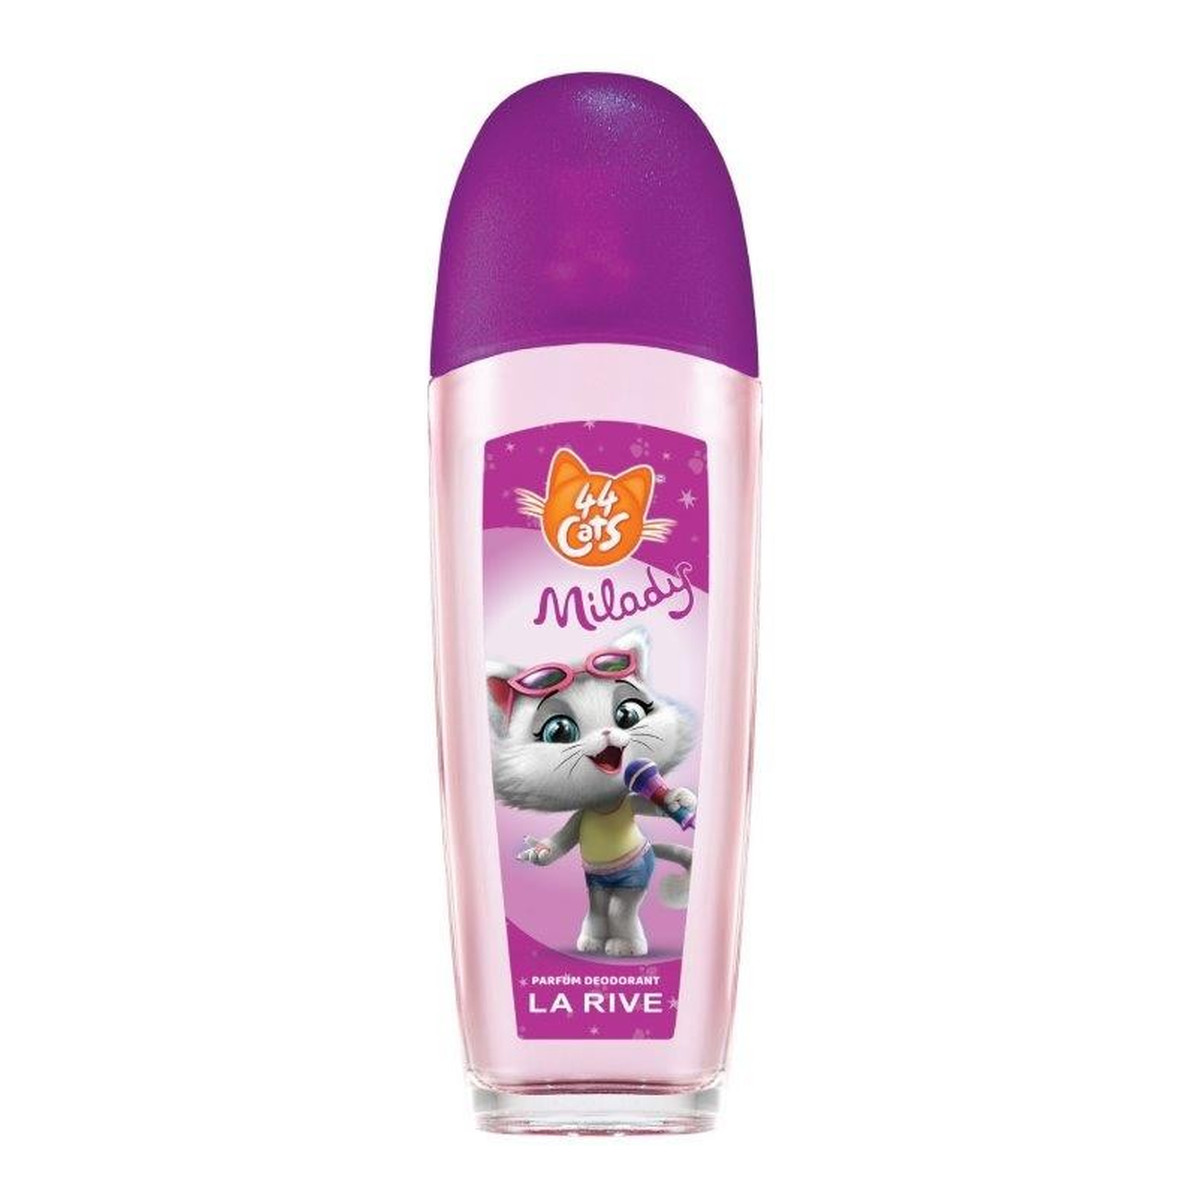 La Rive Disney 44 Cats Dezodorant W Szkle Milady 75ml